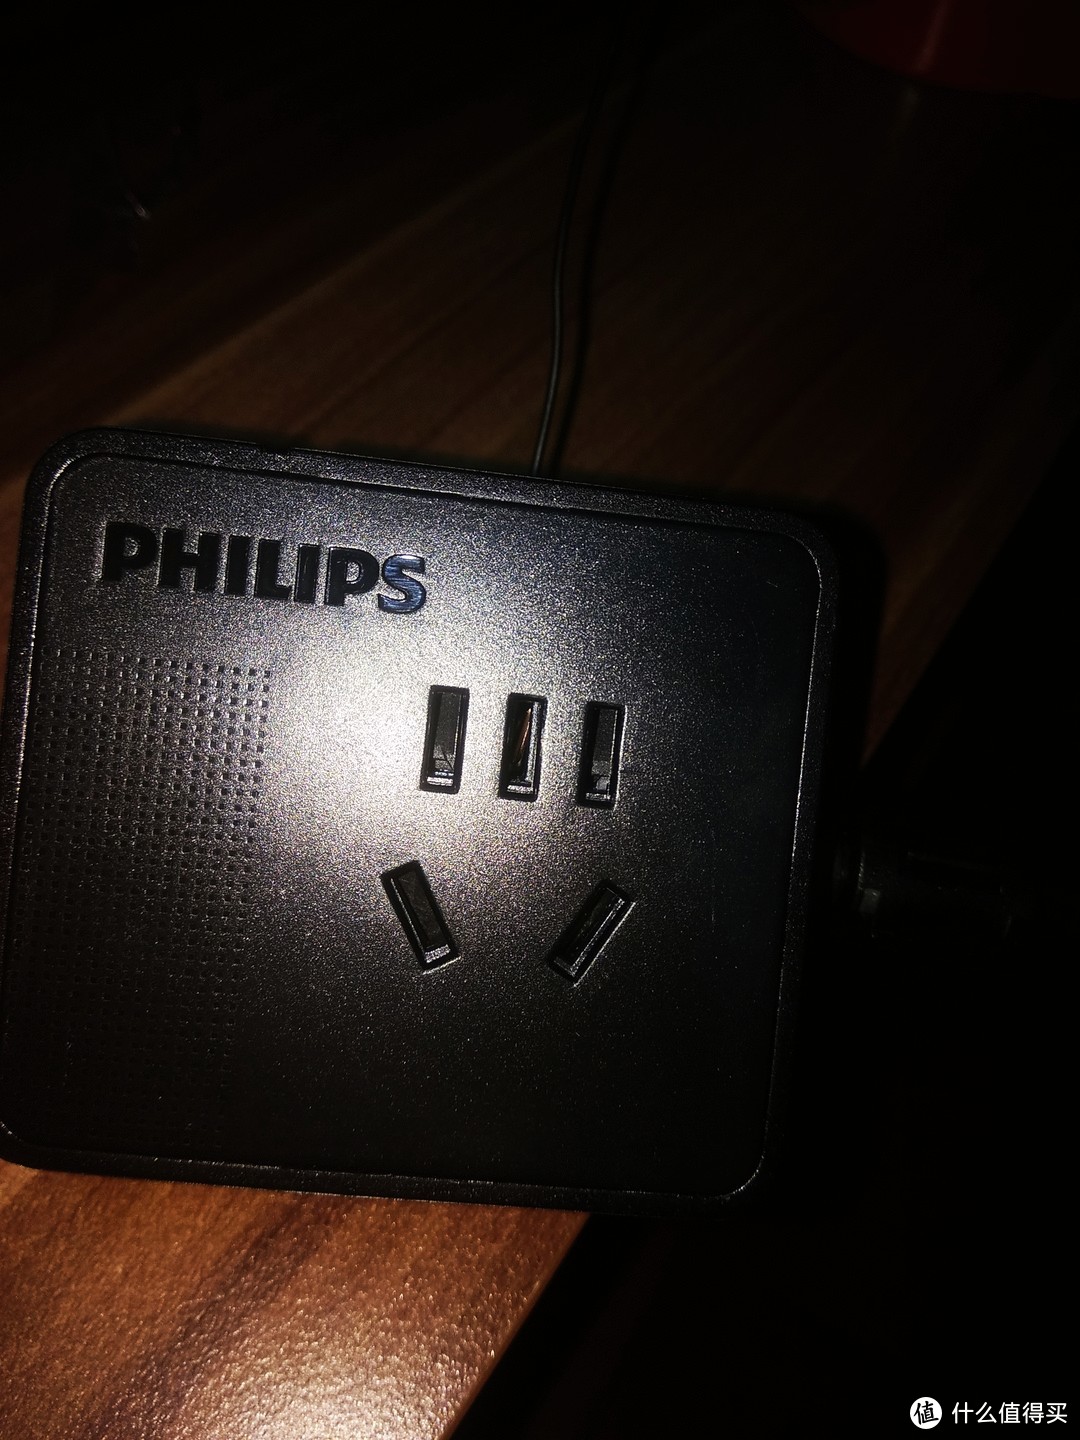 小身材，大能量——飞利浦 便携迷你USB桌面旅行插座